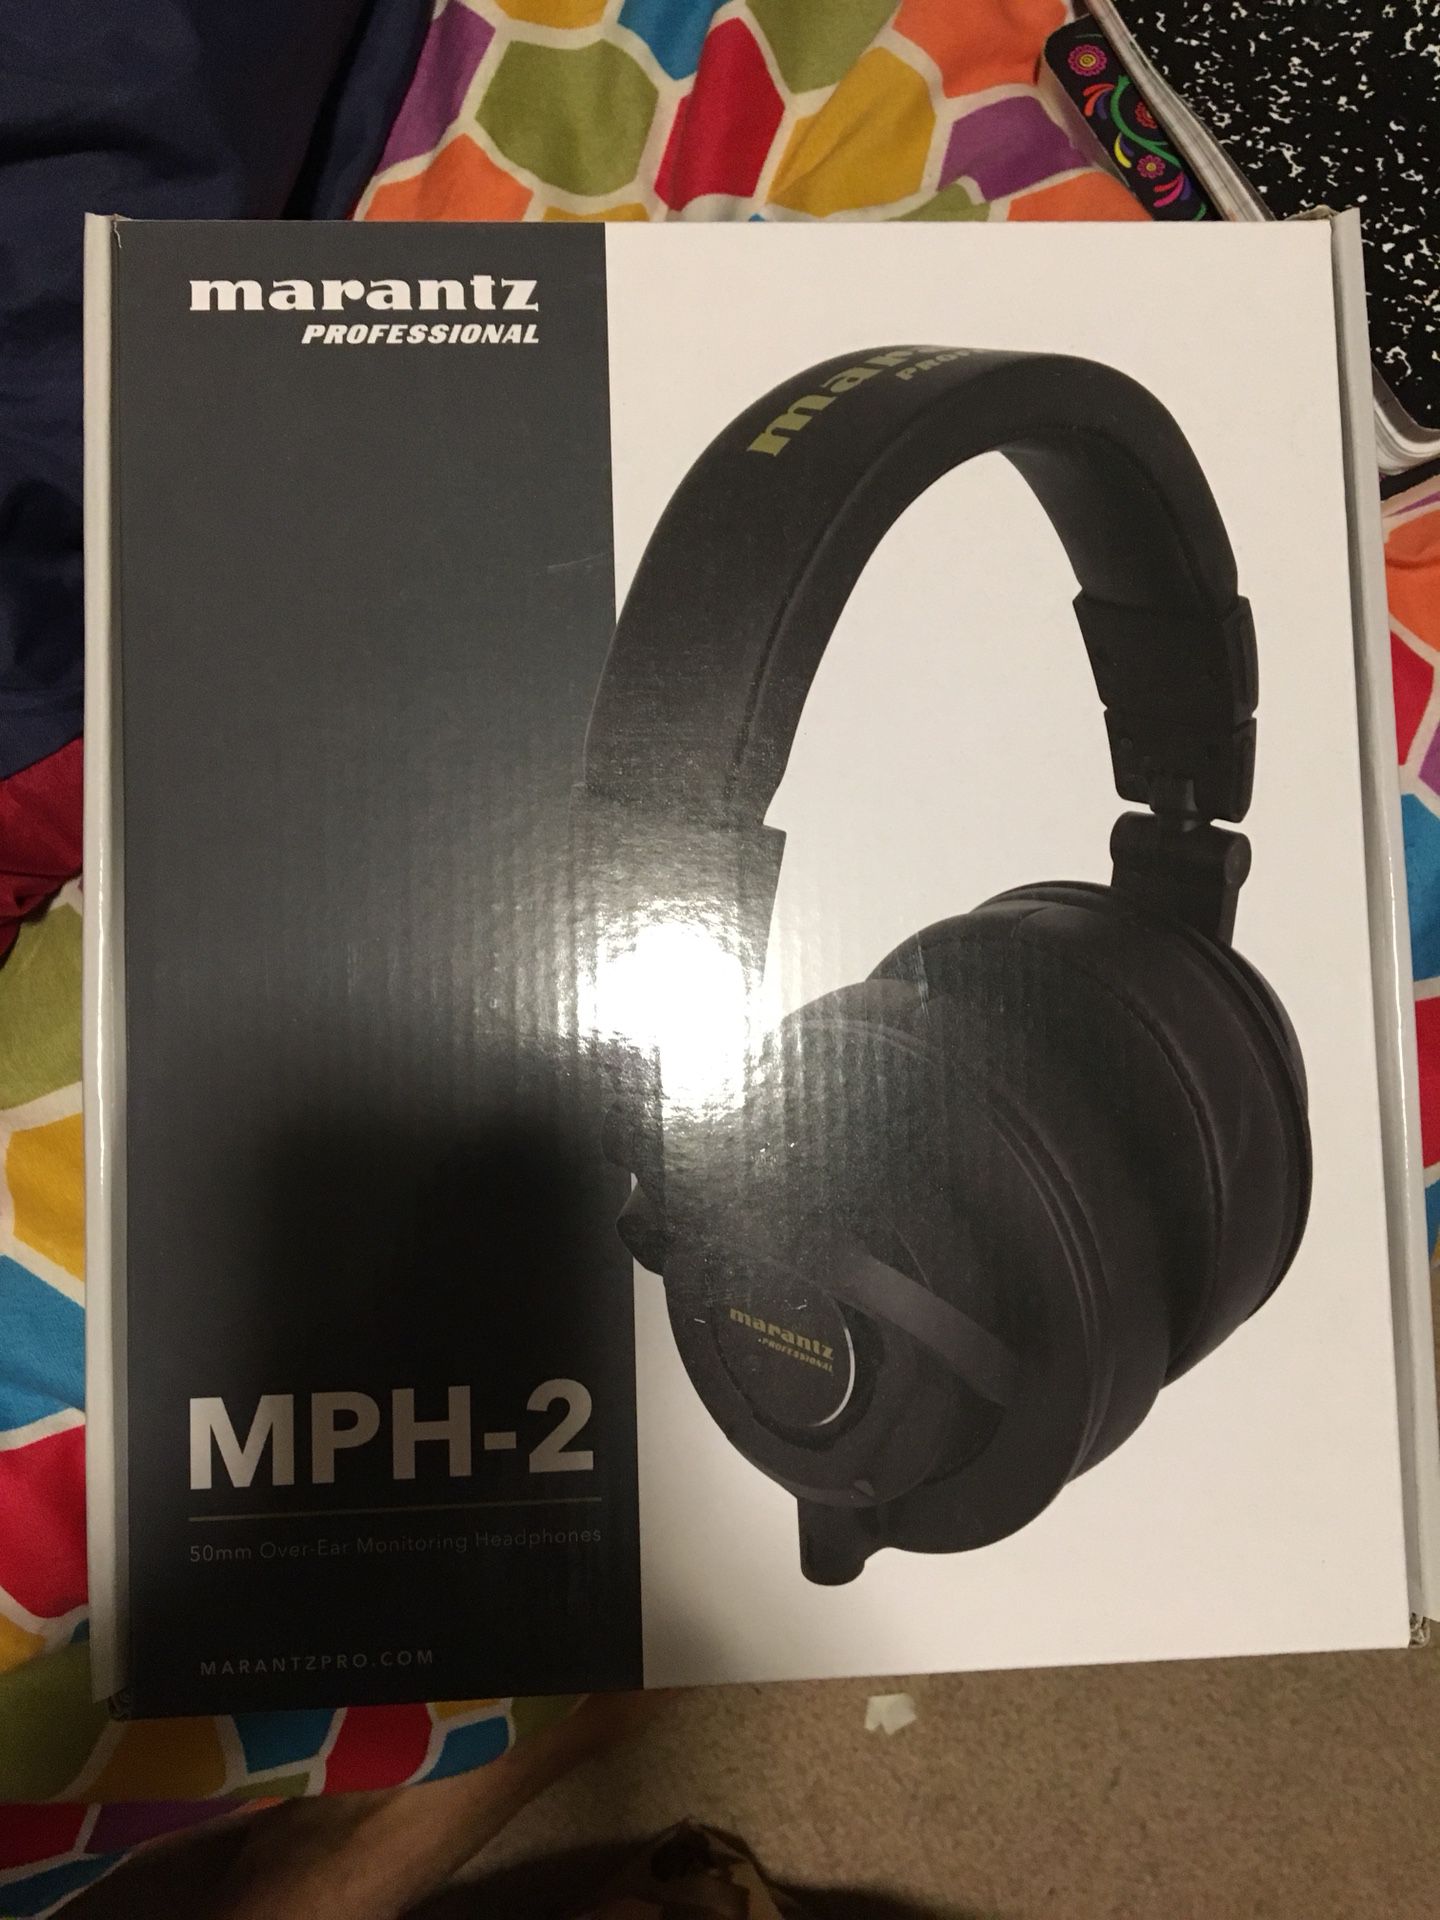 Marantz professional headphones mph2